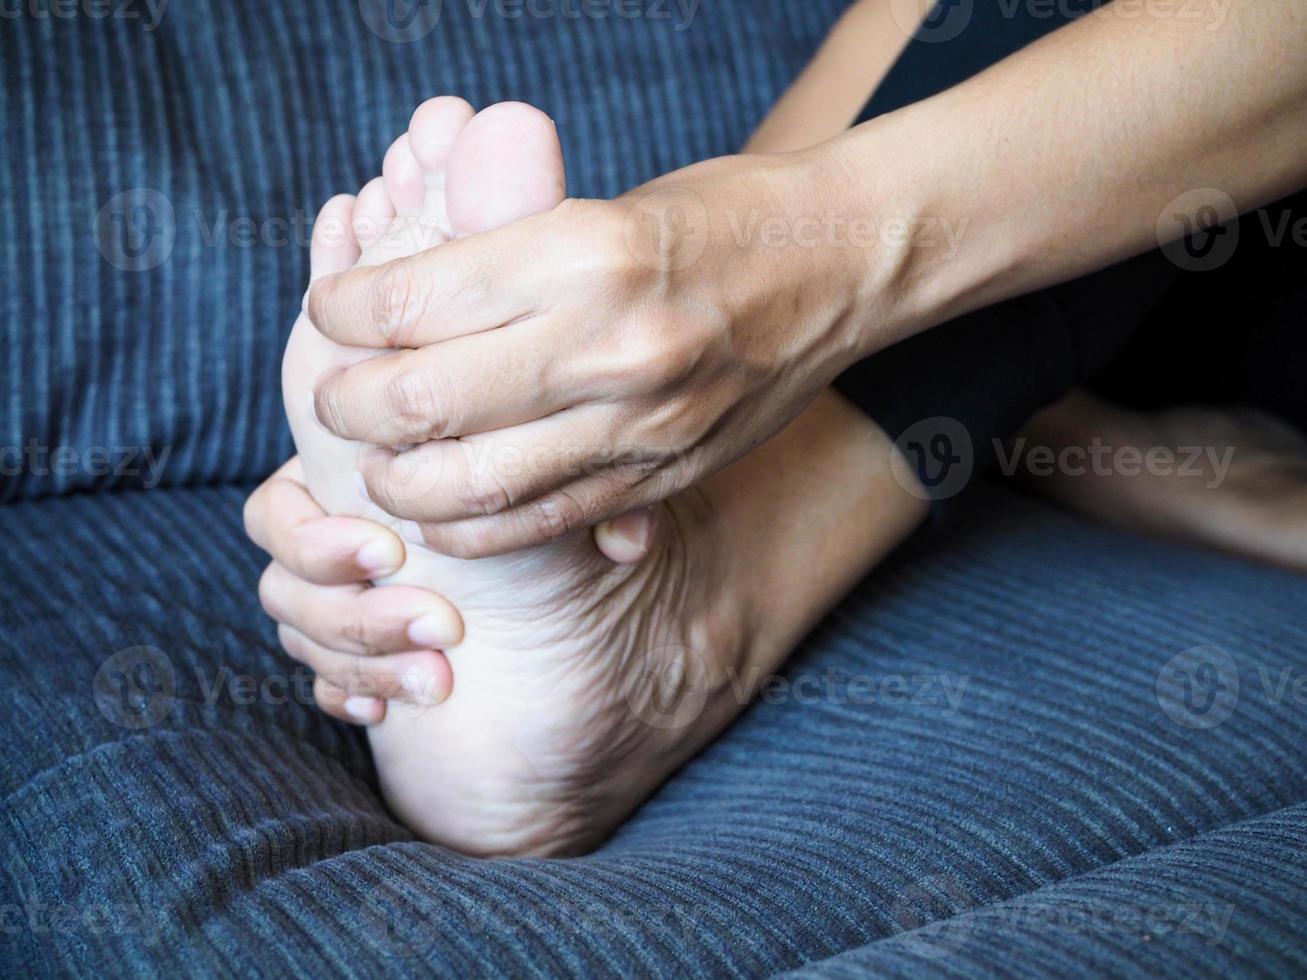 dores crônicas no corpo com dor nos pés e inflamação nos pés ou fascite plantar. foto